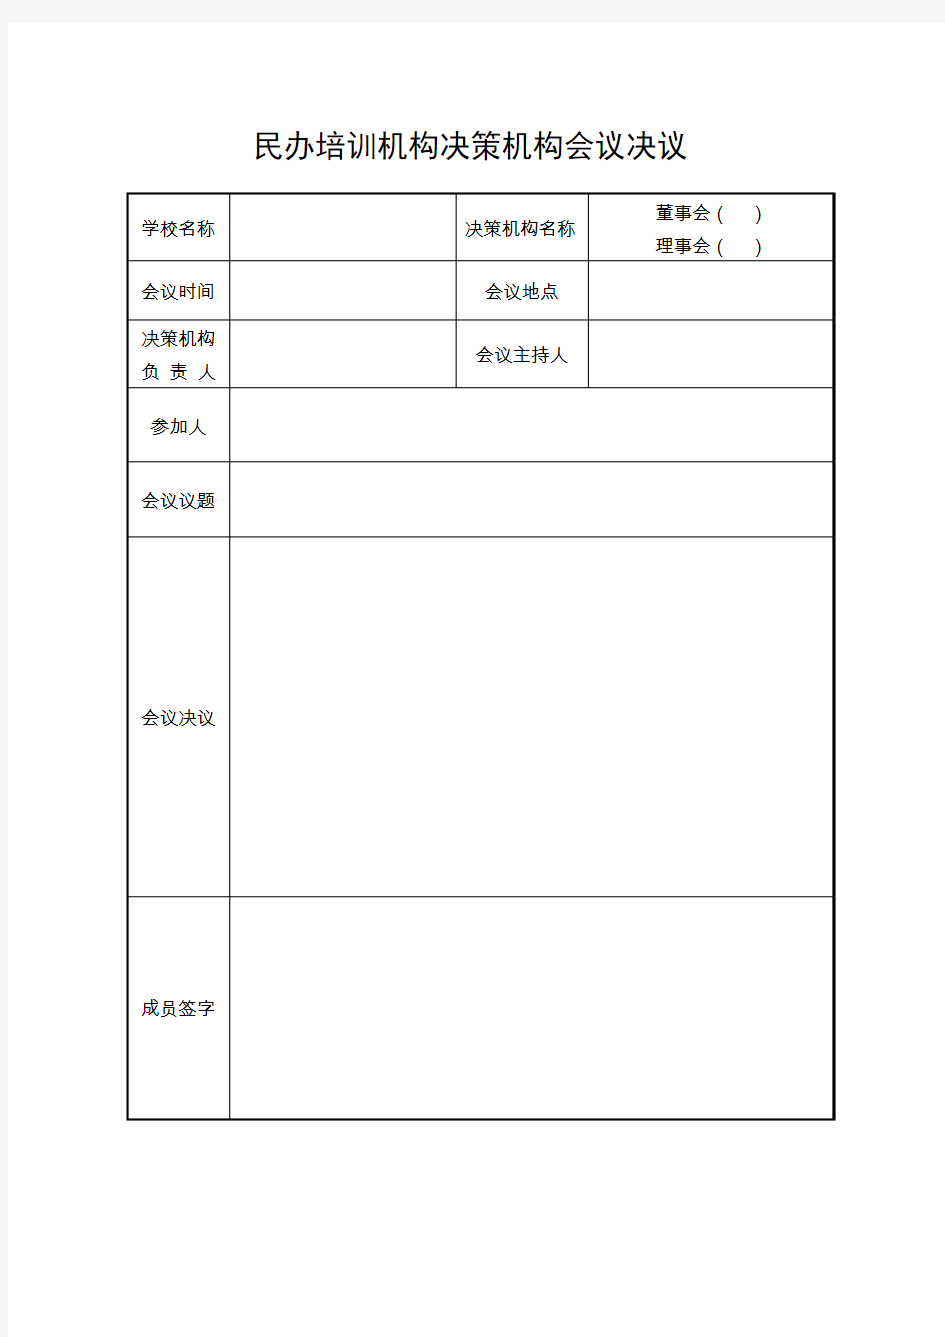 上海市民办培训机构决策机构会议决议(空表)